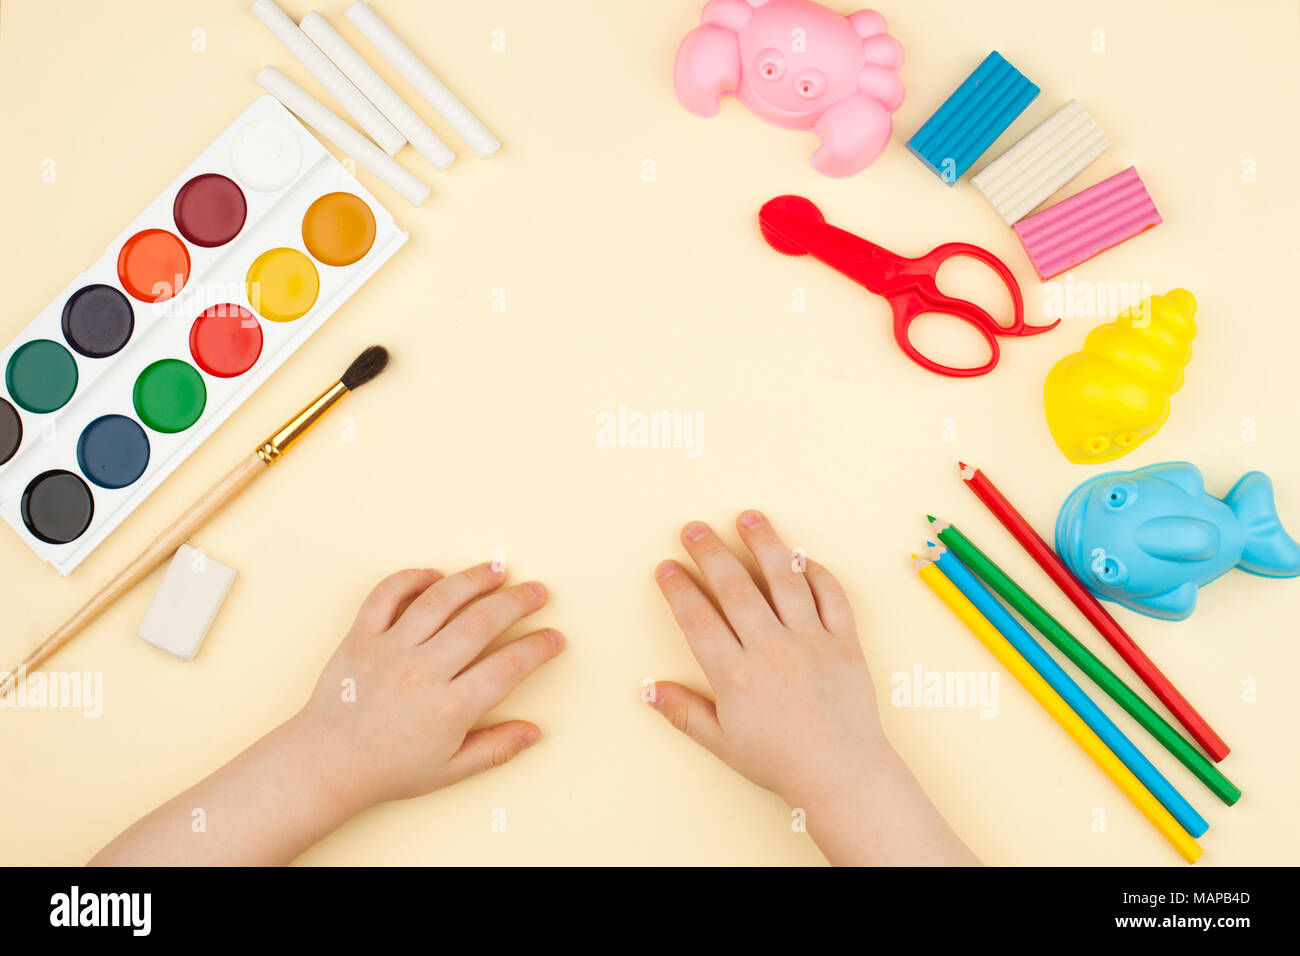 Das Kind sitzt am Tisch mit Objekten für Kreativität, Zeichnung und Hobbys, die Ansicht von oben Stockfoto